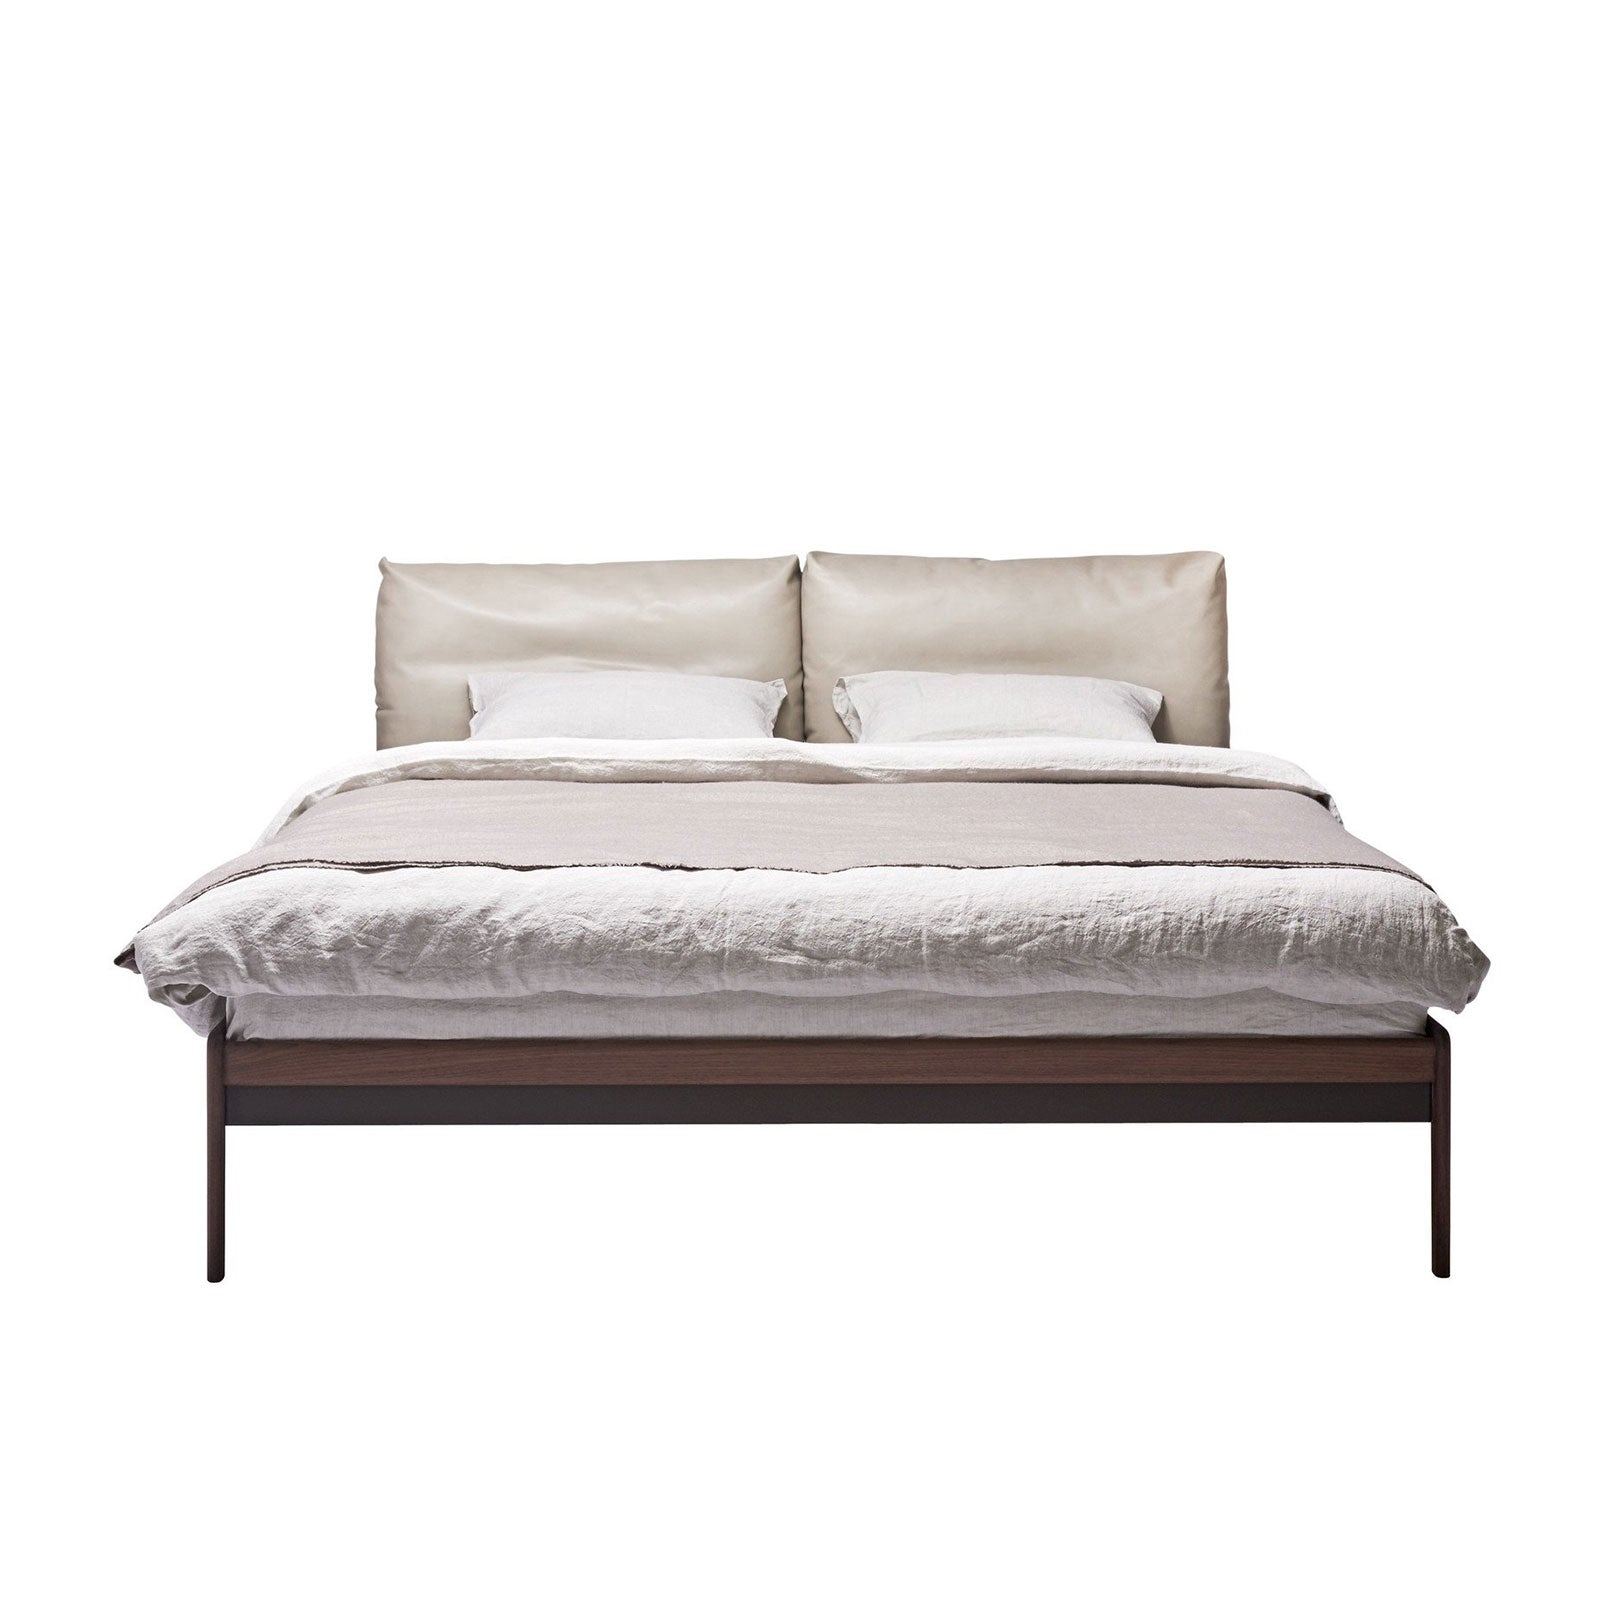 Sova – Bed 140 x 200 cm – More Moebel – Indor – Indor